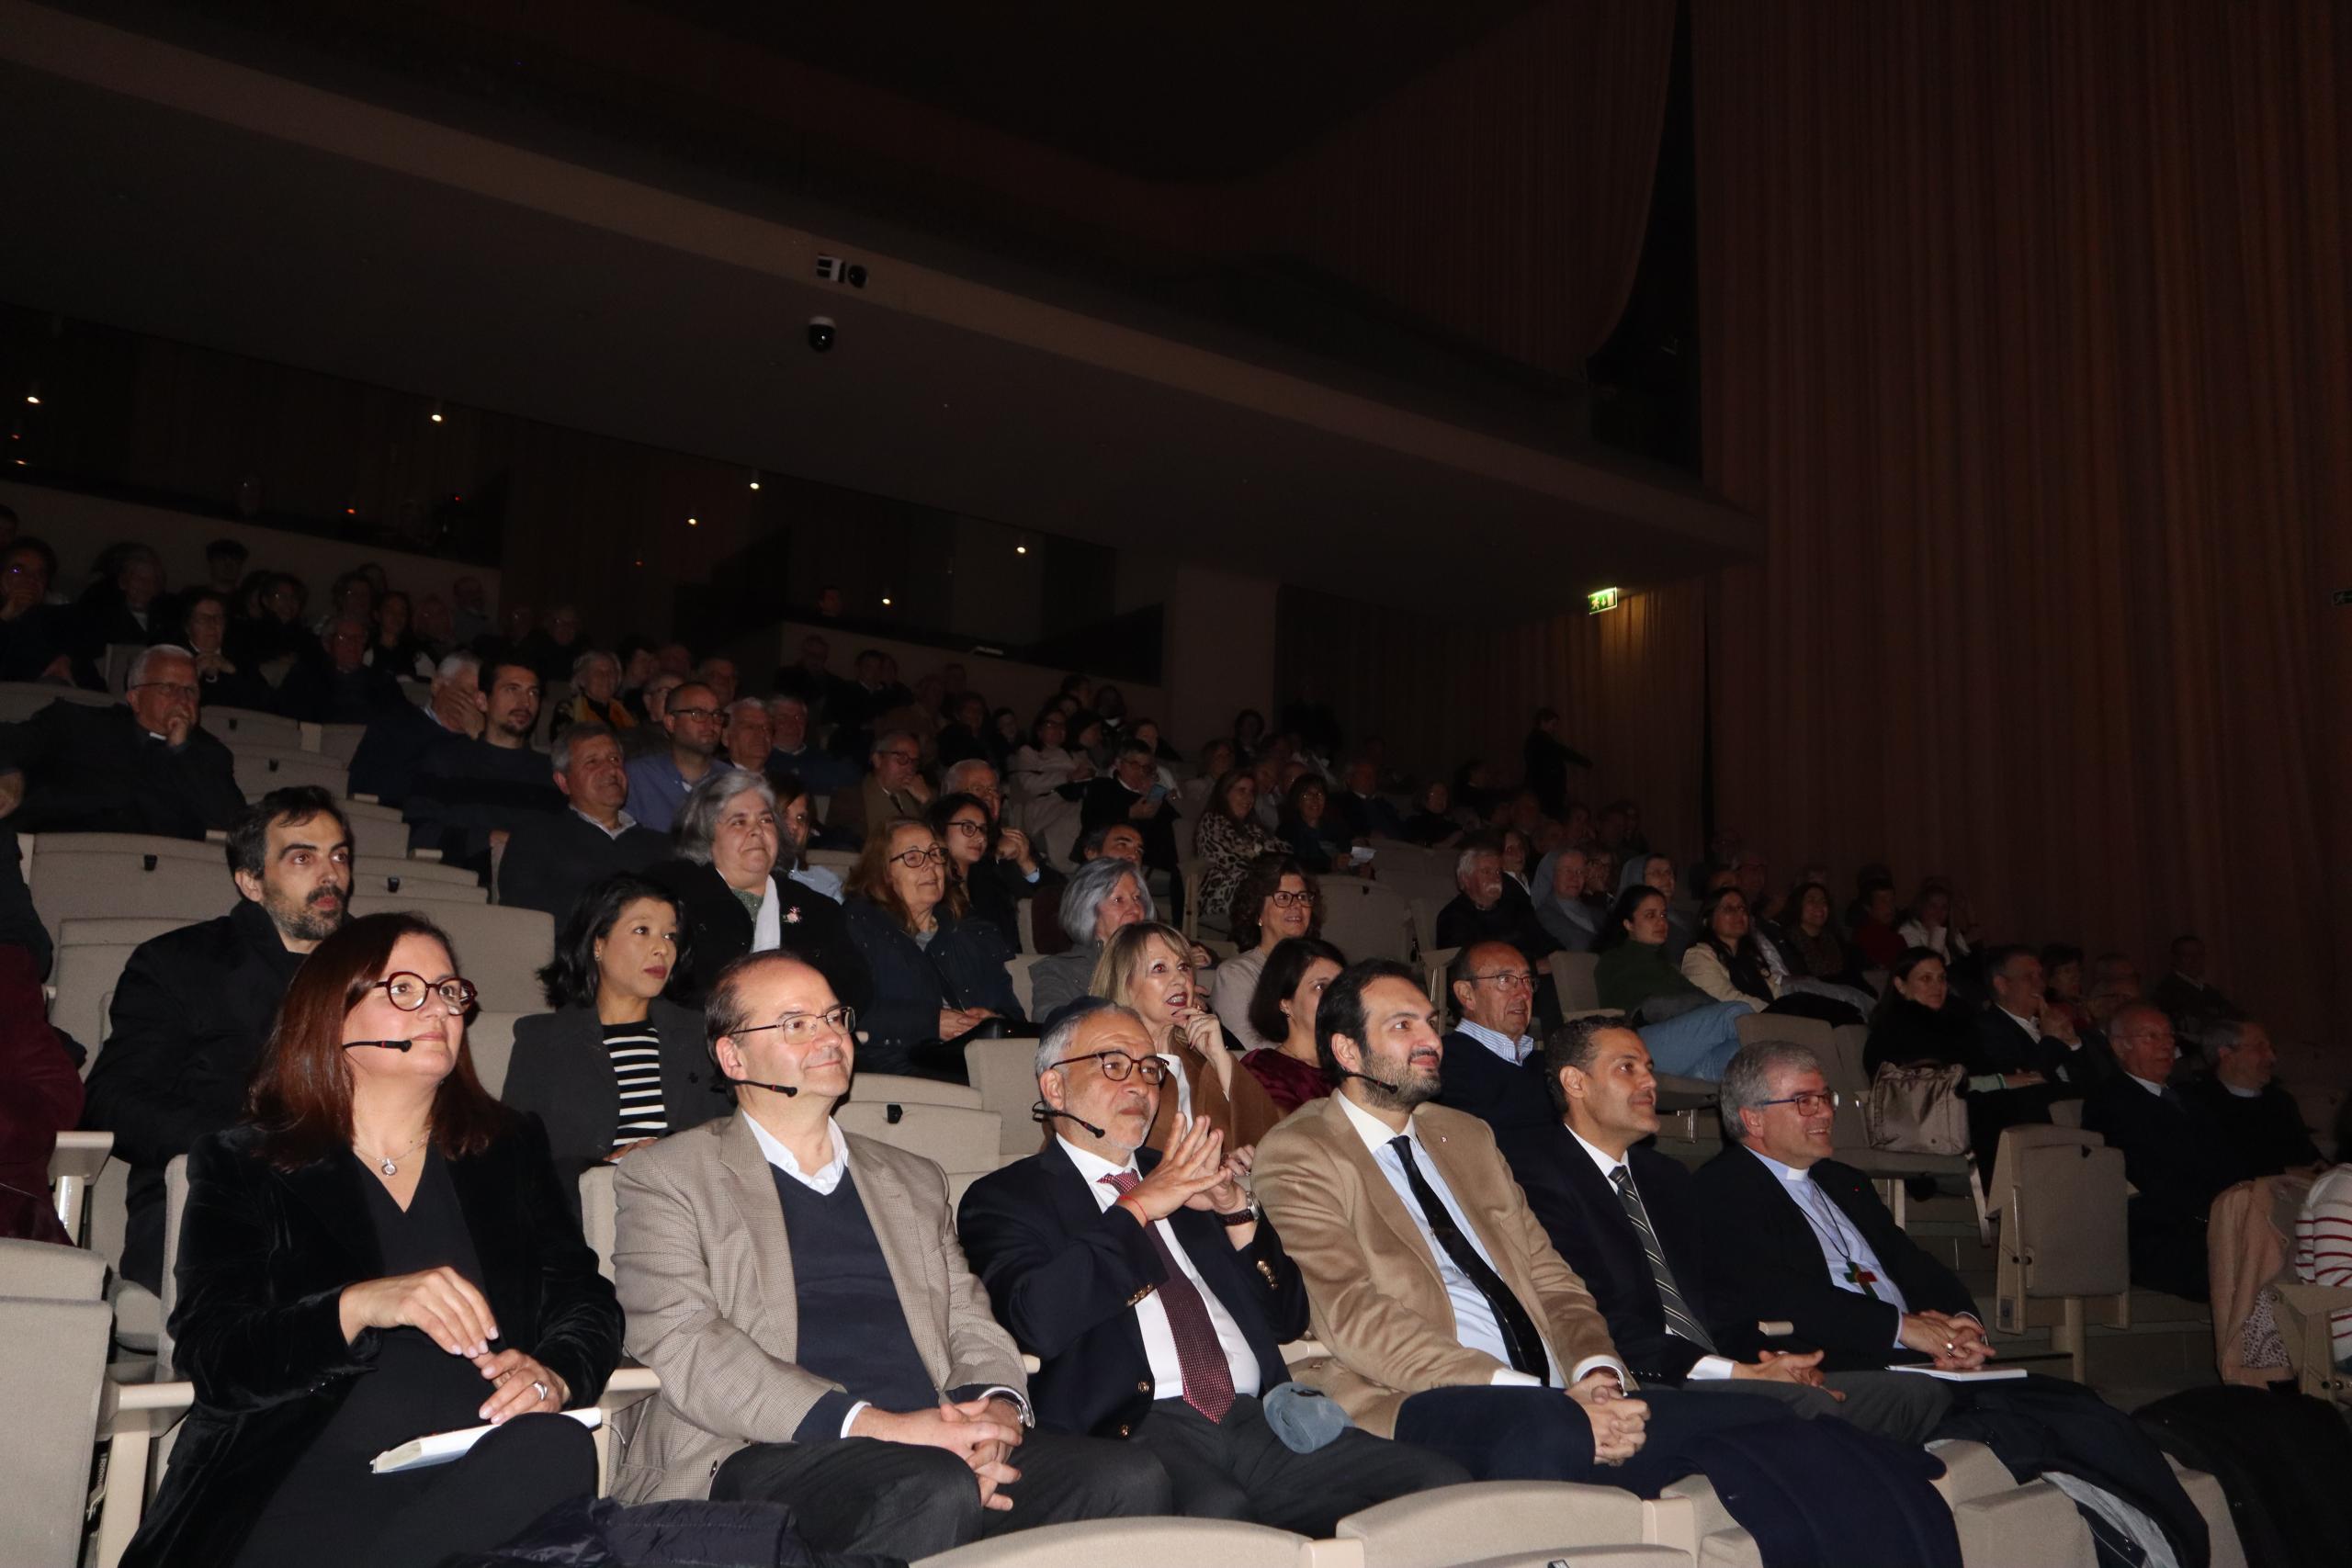 Última conferência “Nova Ágora” superou expetativas como a mais participada do ciclo